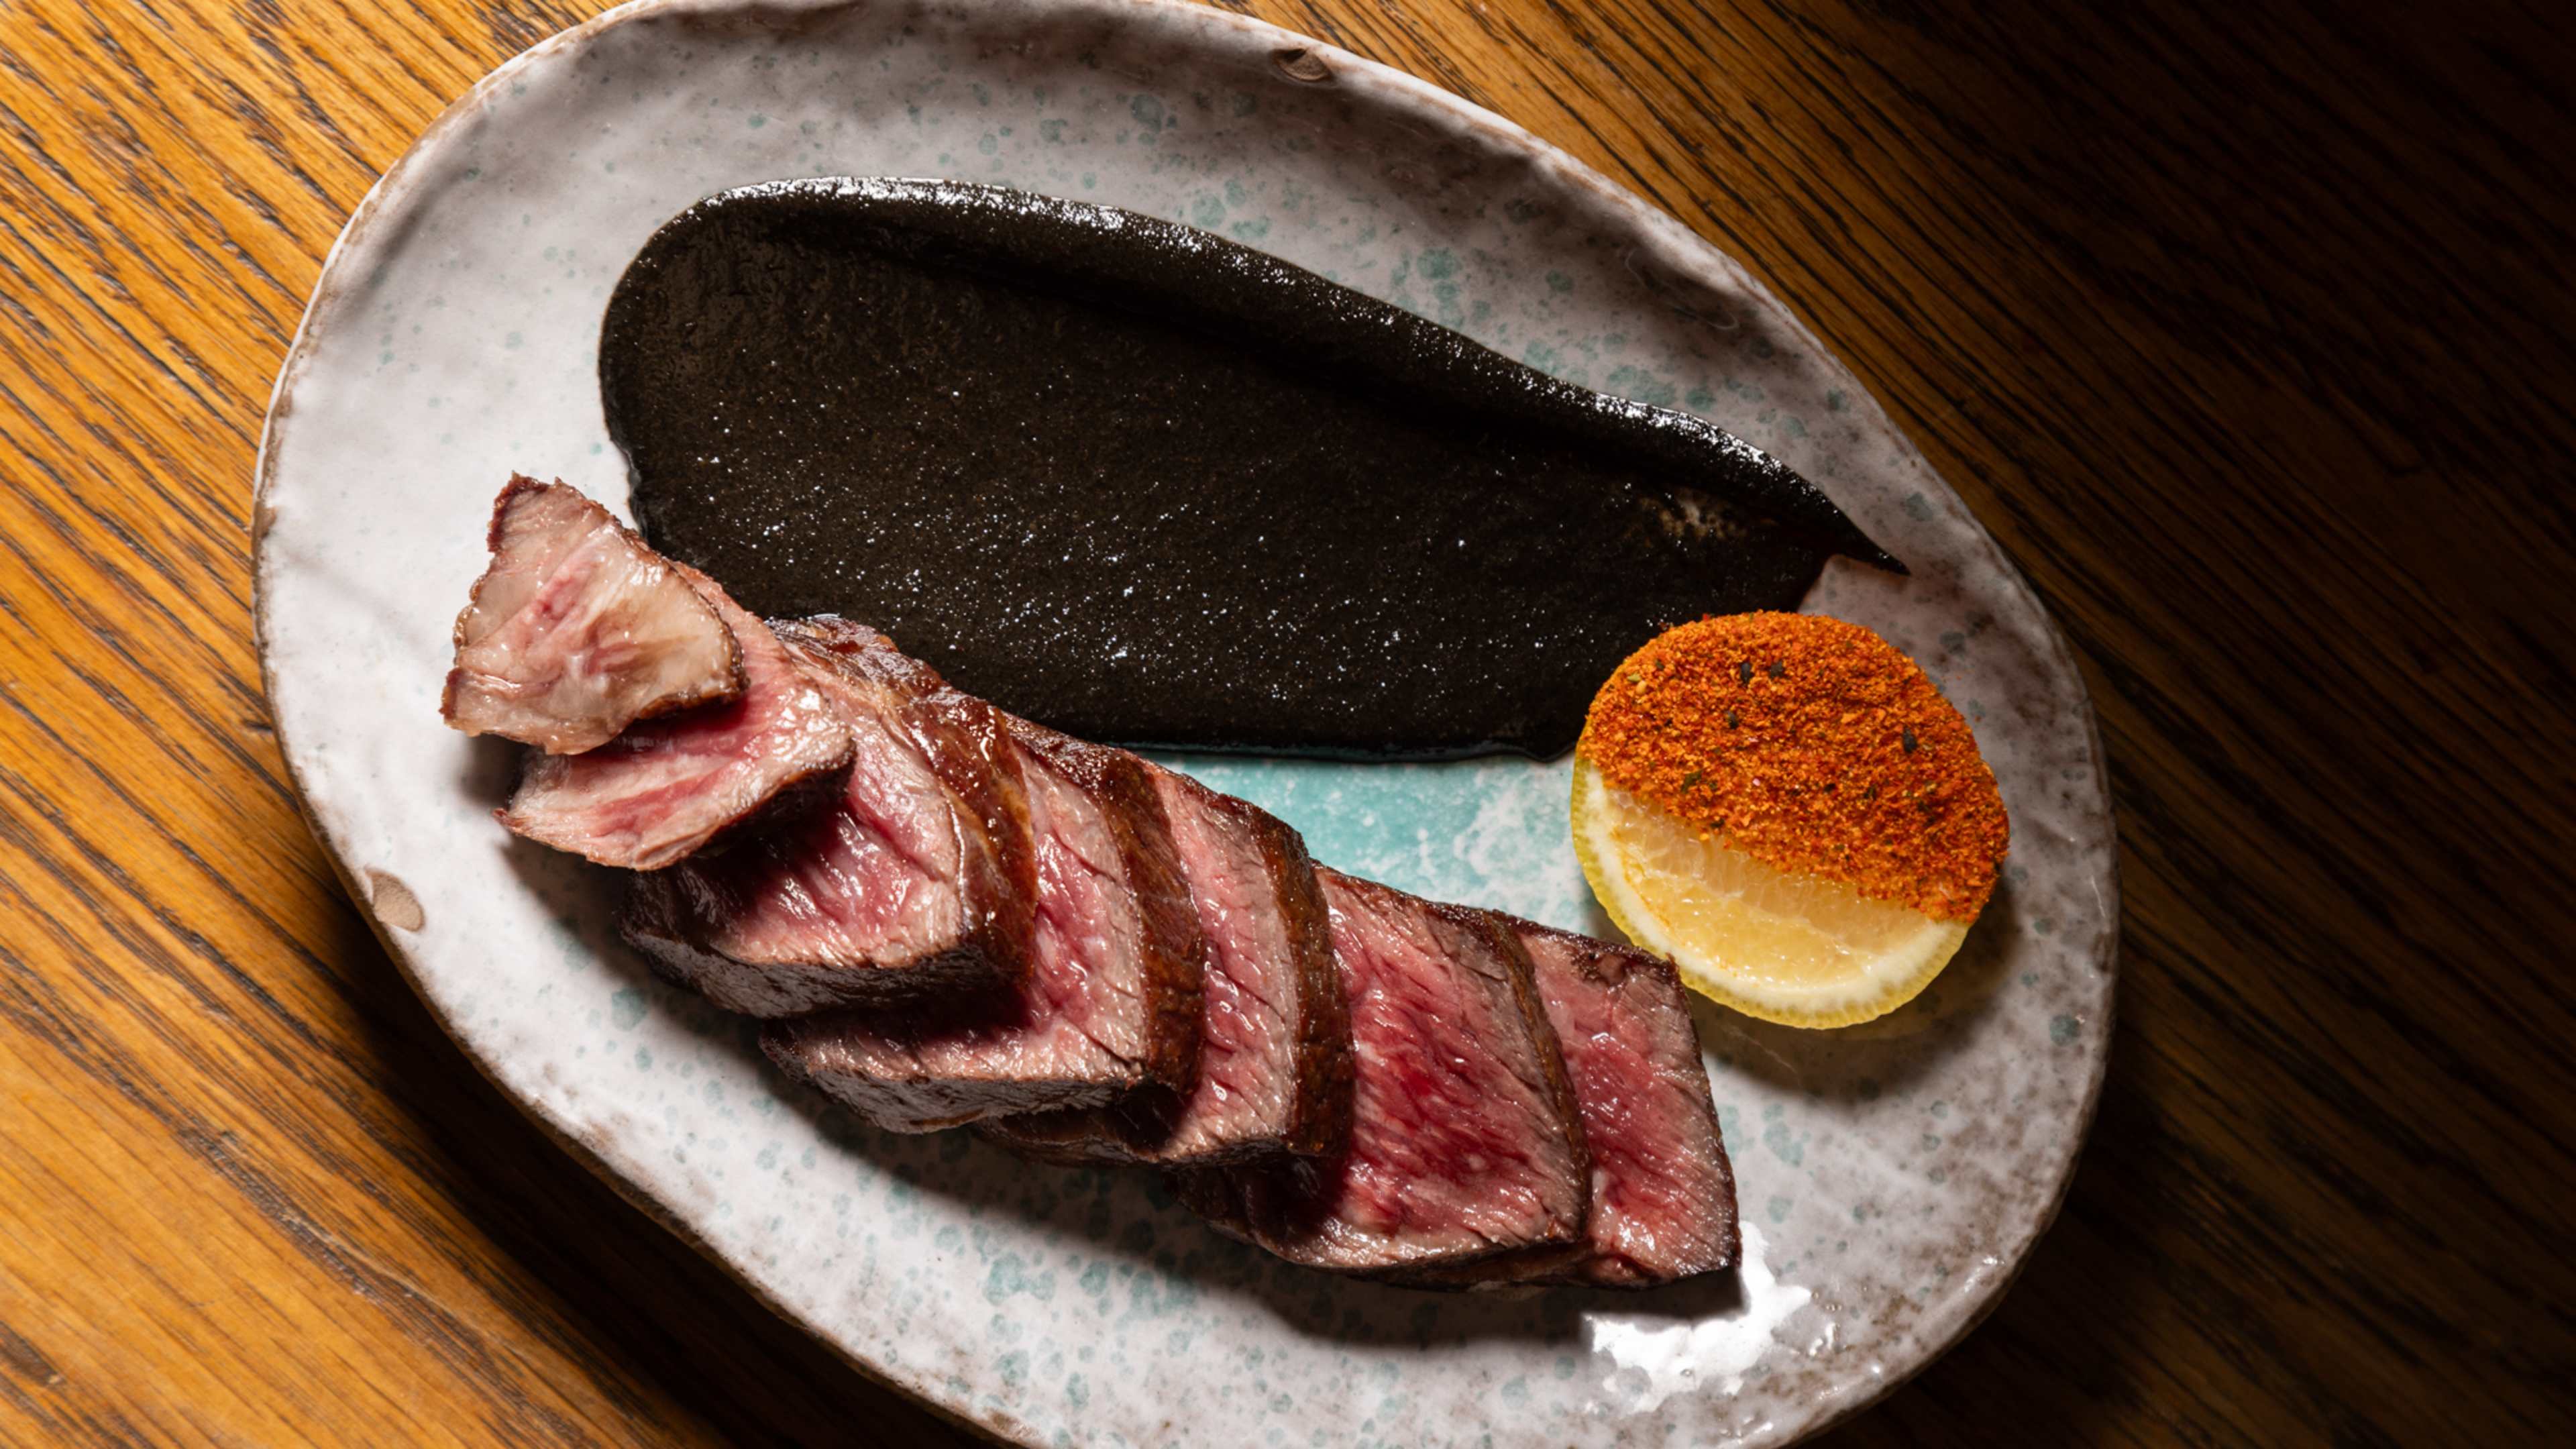 This is a steak dish at Royal Sushi Omakase & Izakaya.